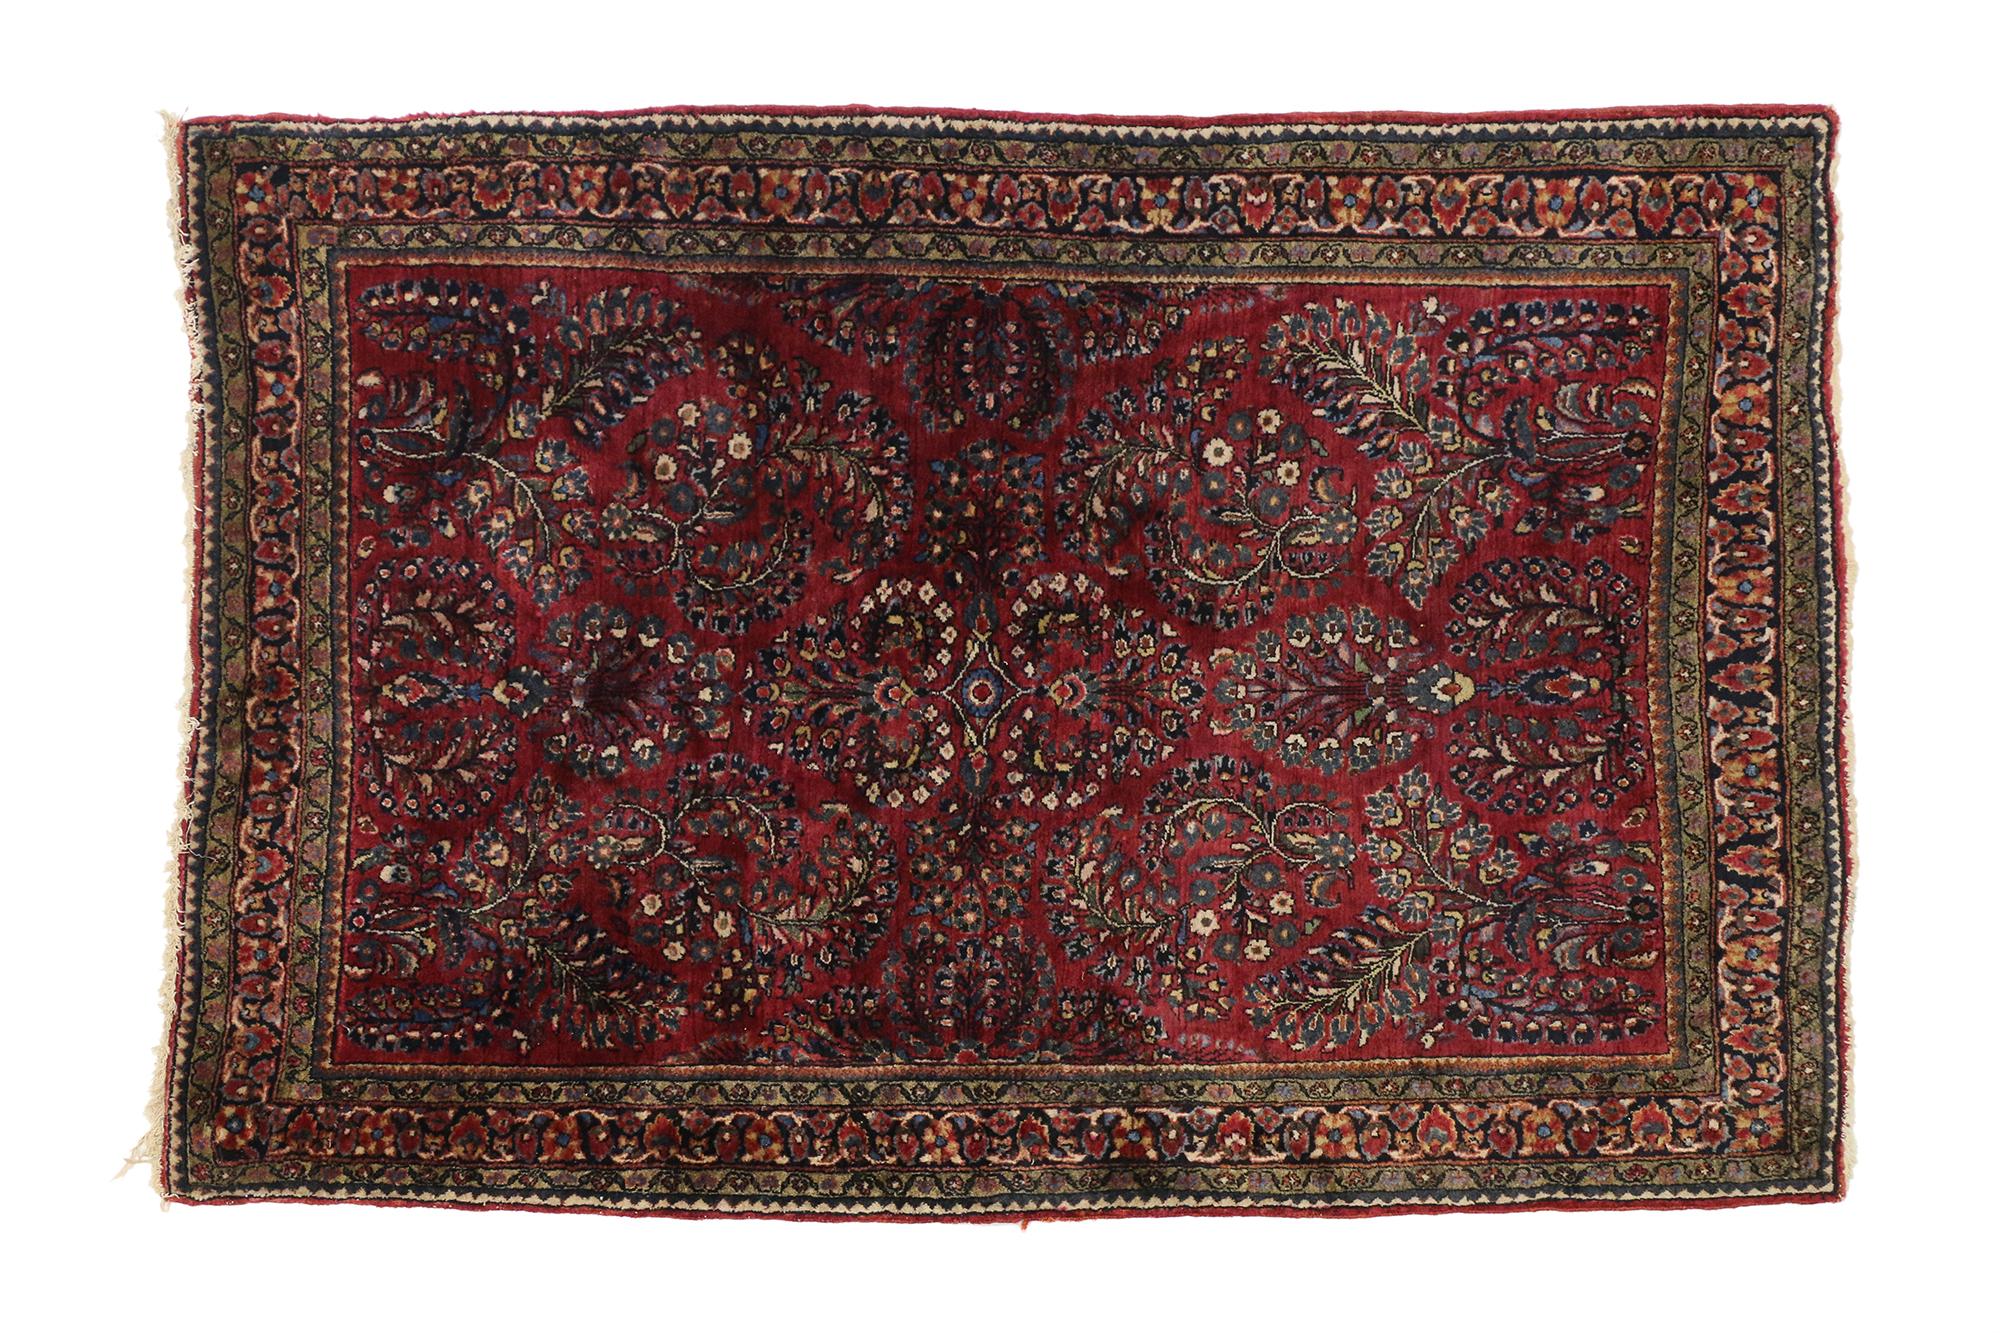 art nouveau style rugs